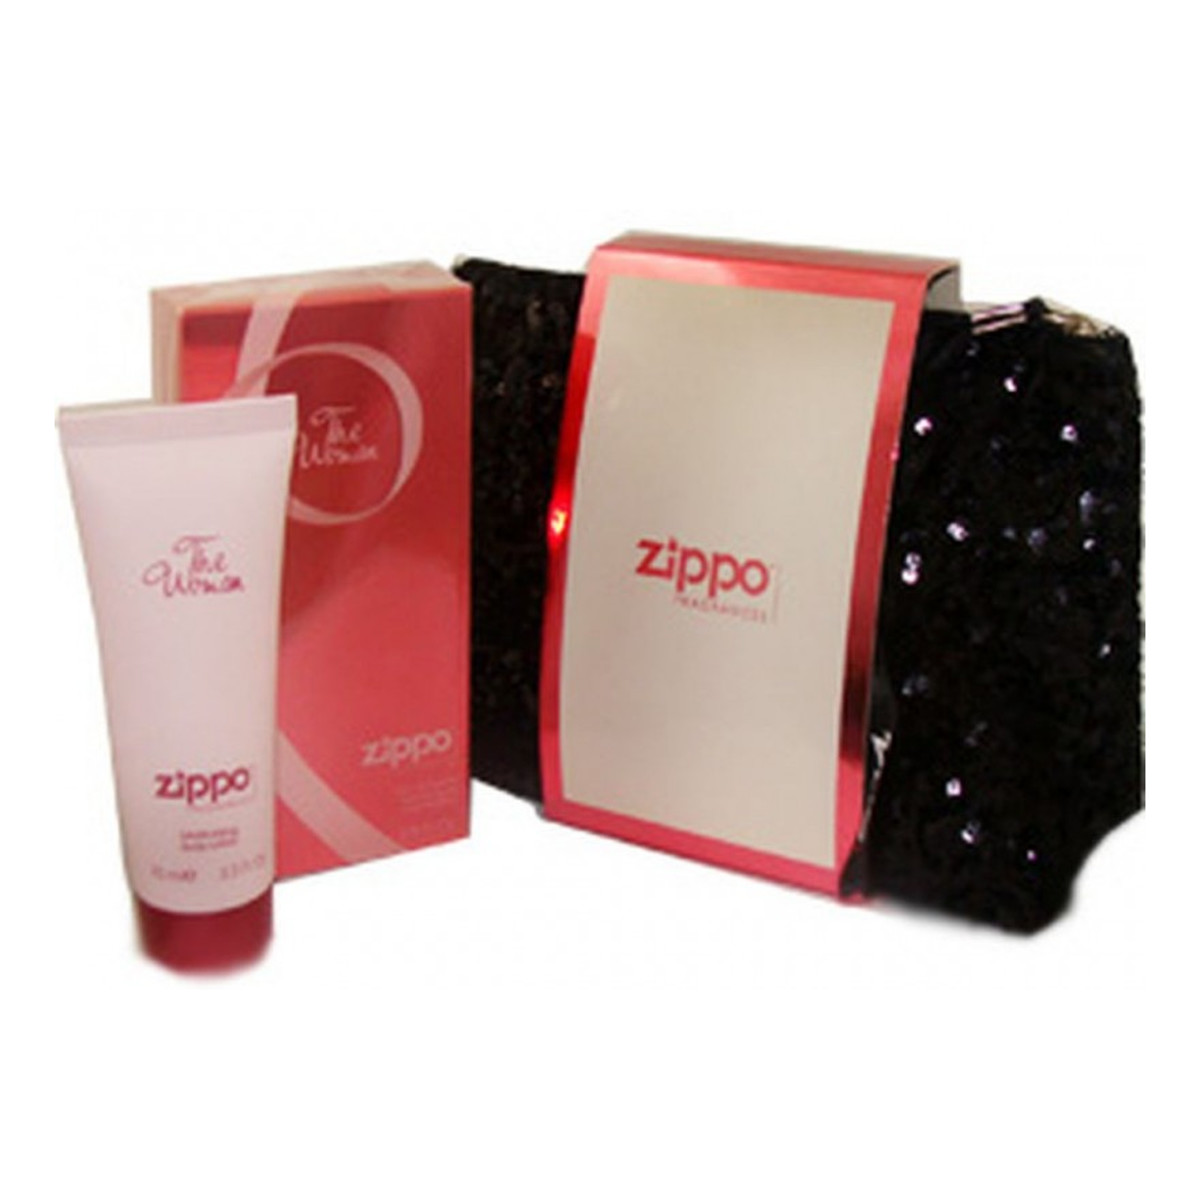 Zippo The Woman woda perfumowana 75ml + balsam do ciała 75ml + kosmetyczka